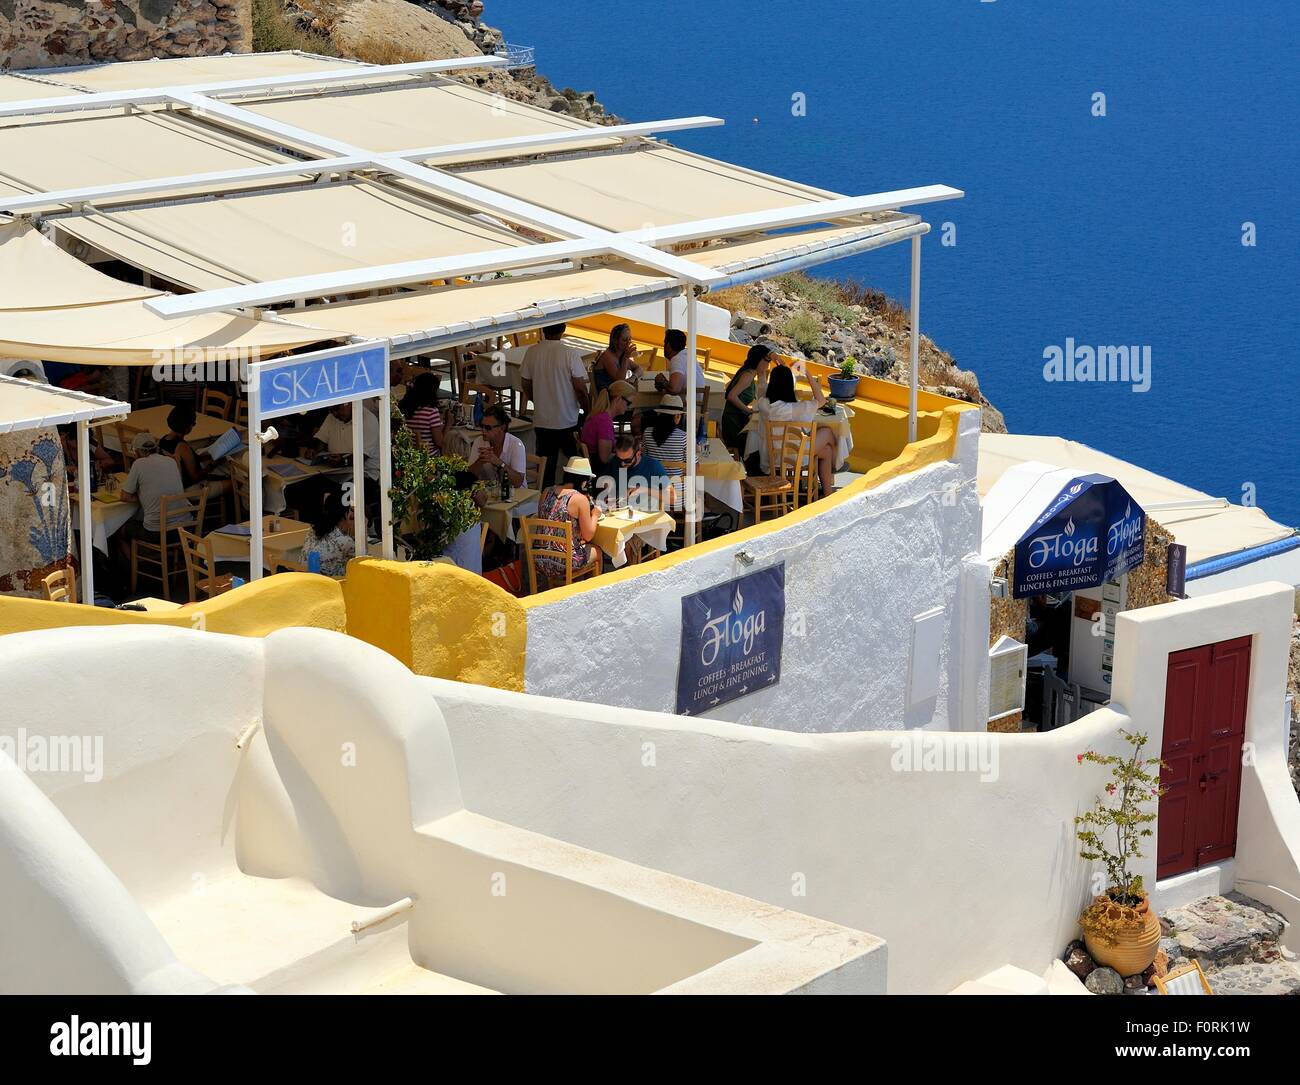 Menschen Essen im Restaurant Skala mit einem Caldera Meer anzeigen Oia Santorini Griechenland Stockfoto